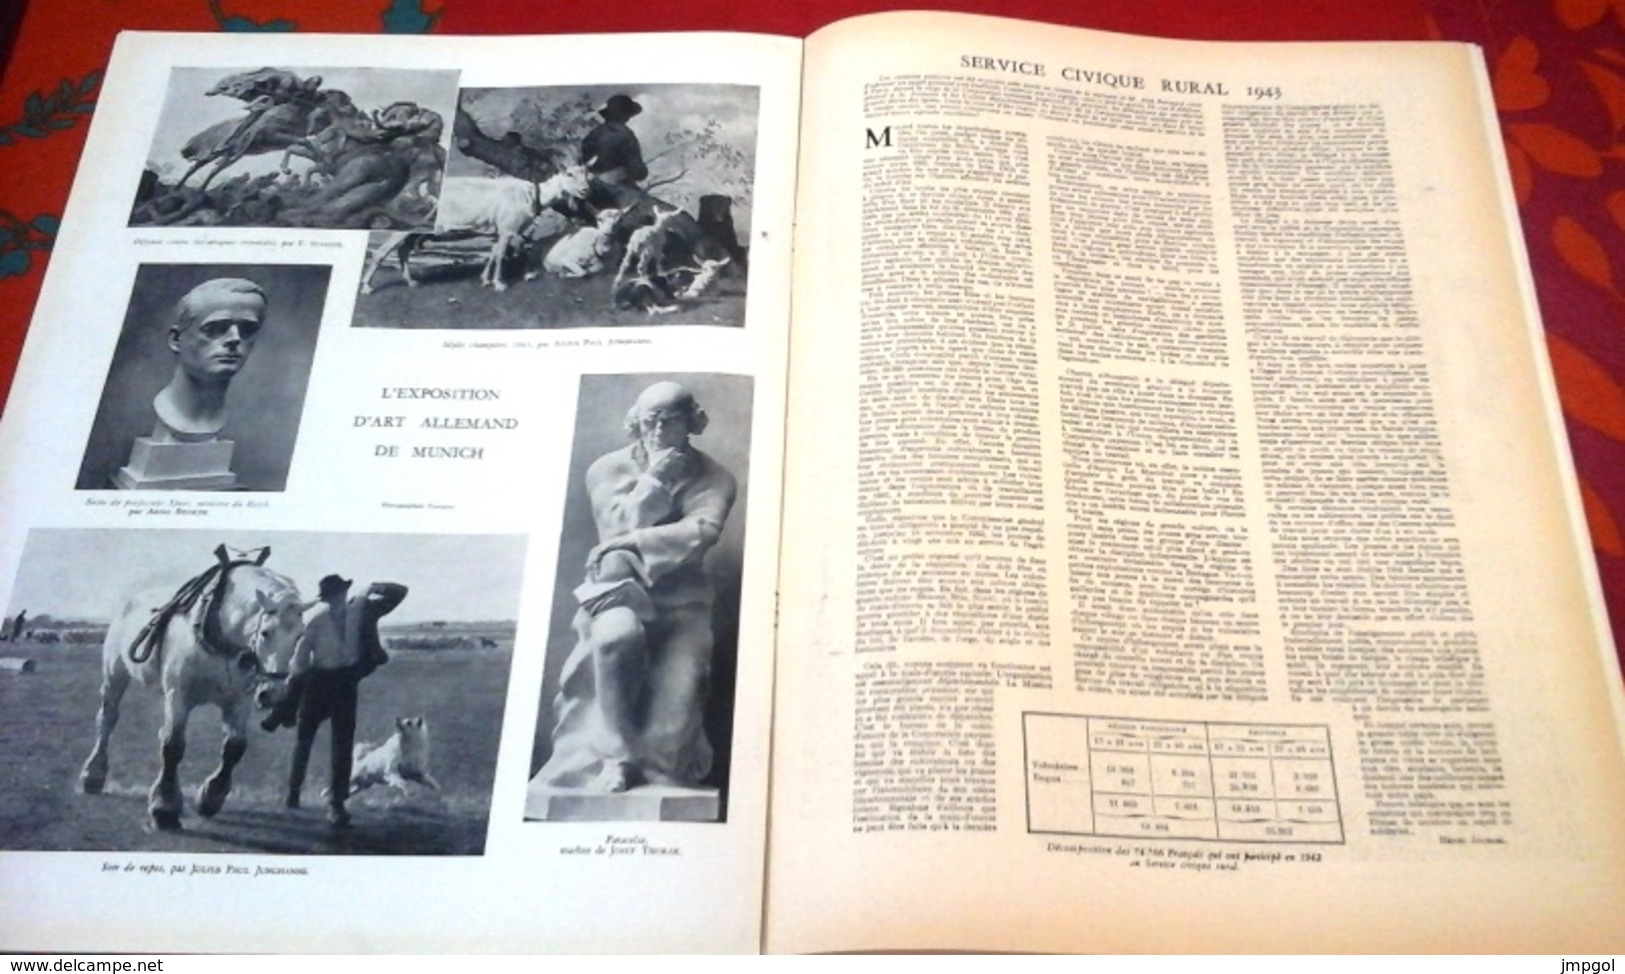 WW2 L'Illustration n°5235 Juillet 1943 Pardon Saint Jean Lyon,Charlotte Corday,Marly le Roi,Service Civique Rural